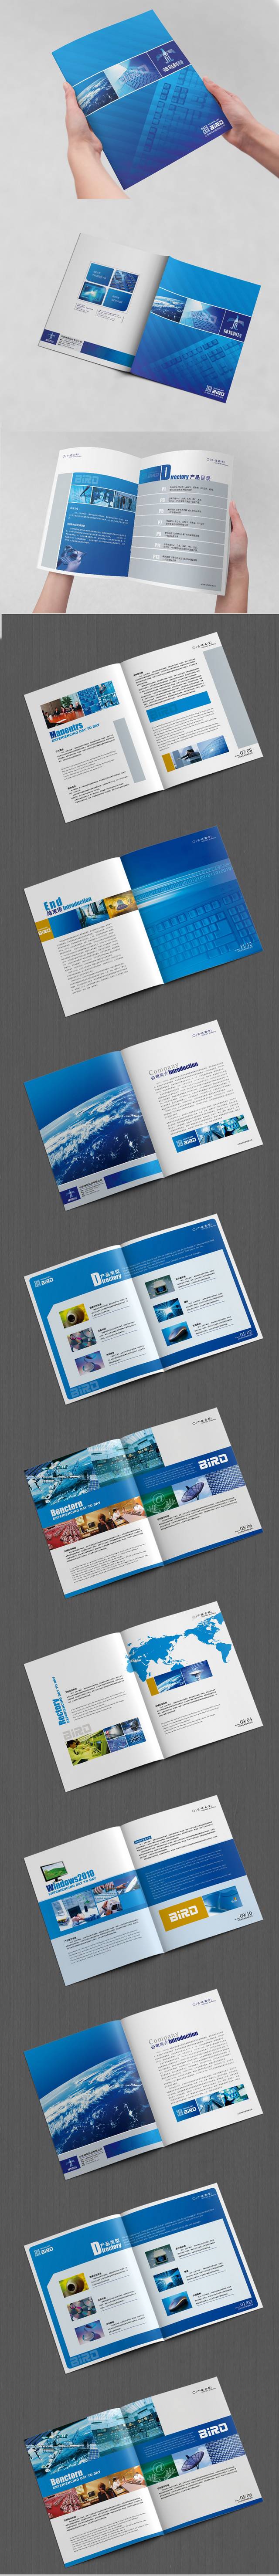 蓝色科技产品宣传册模板